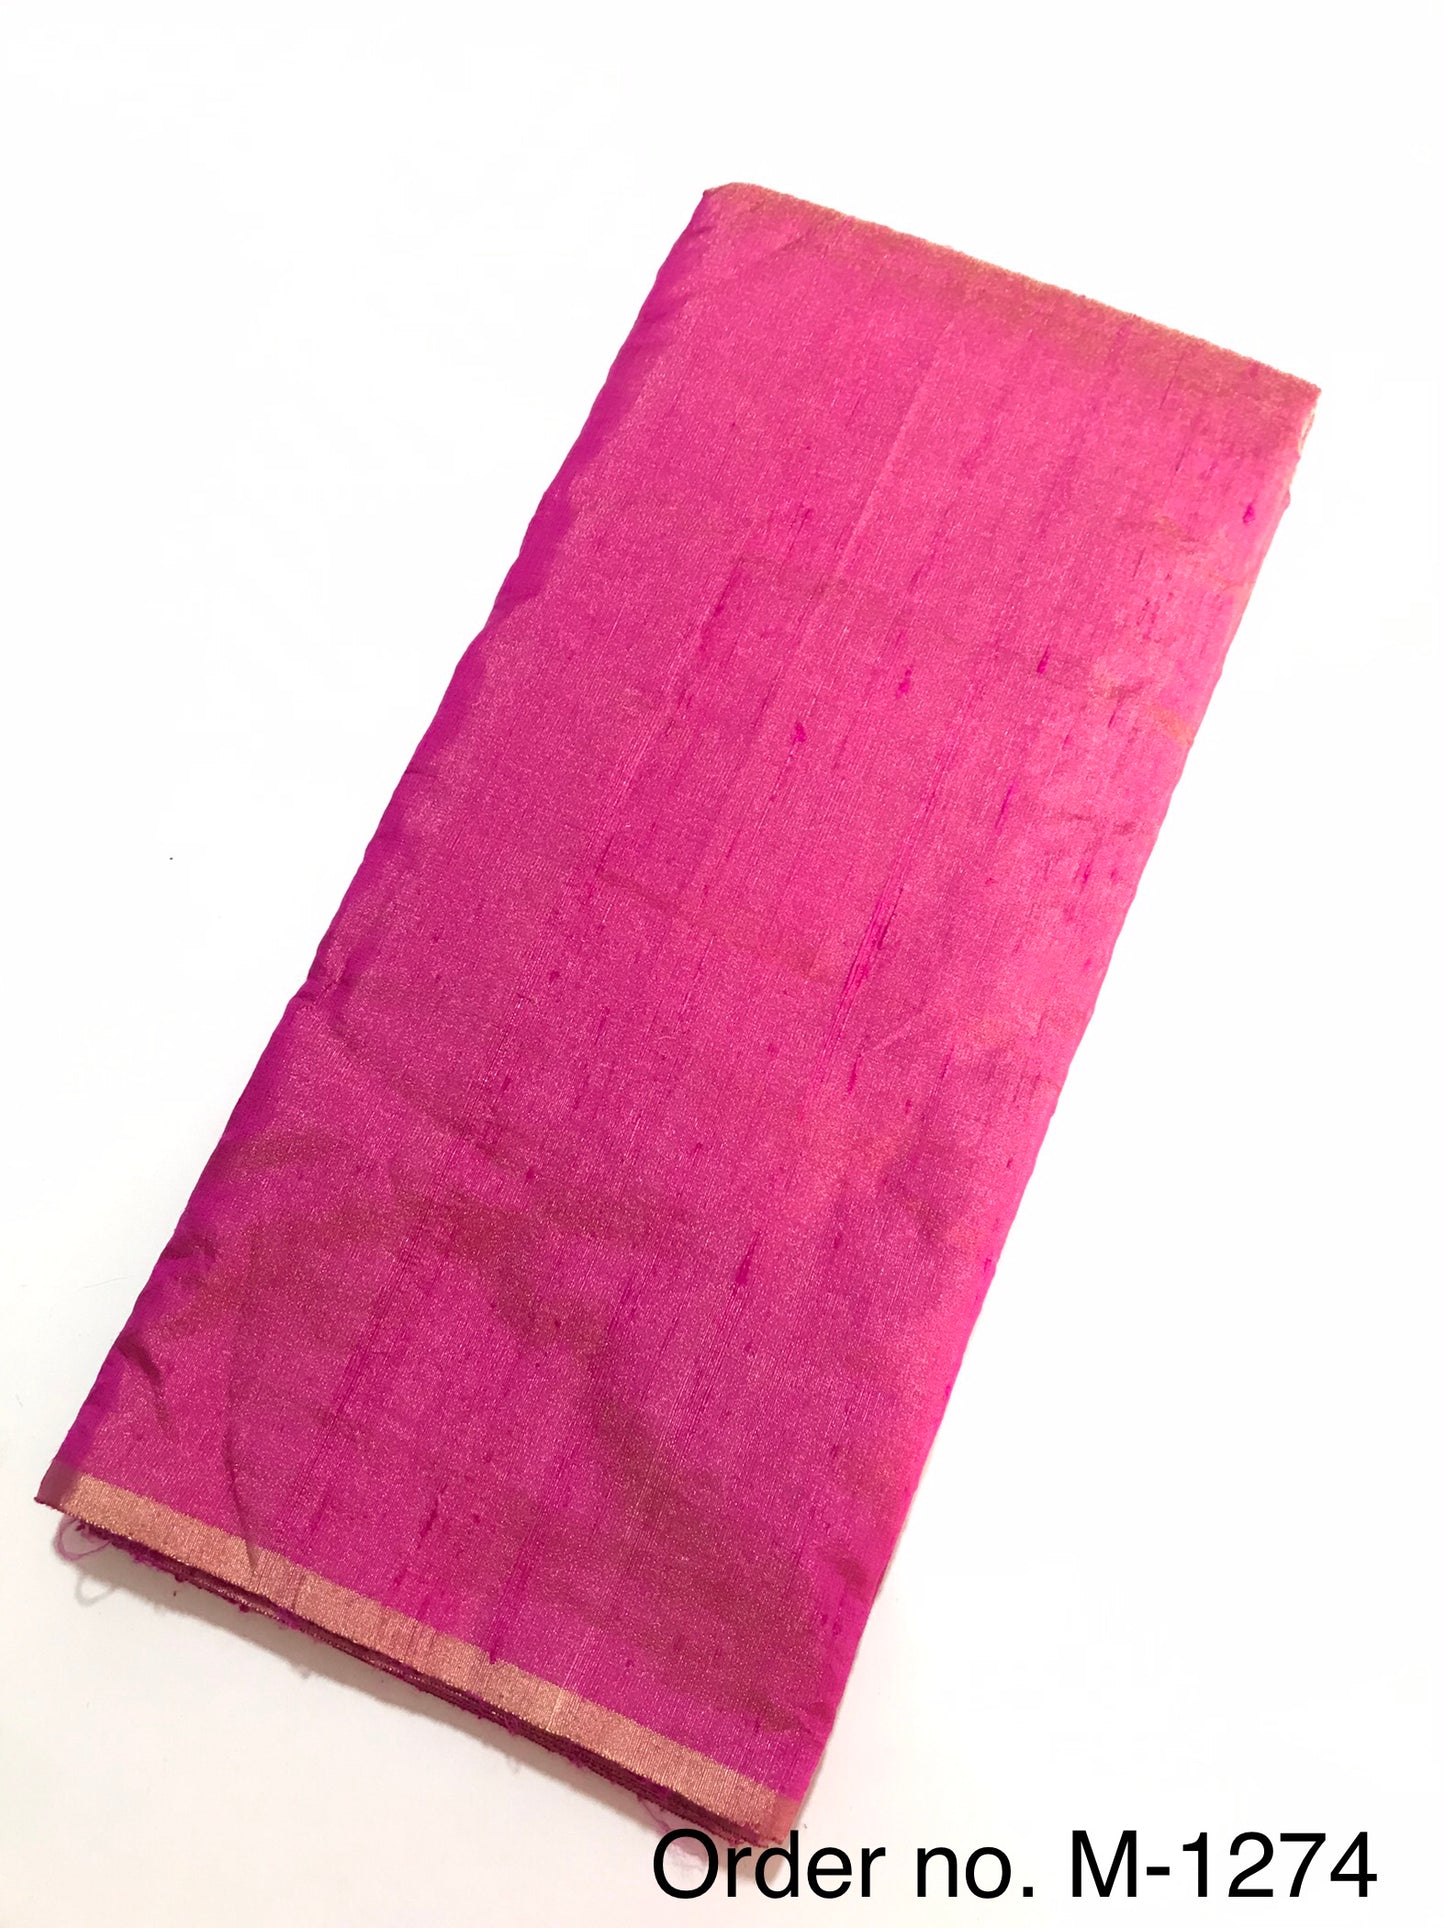 Tissue raw silk 105gm width 44”